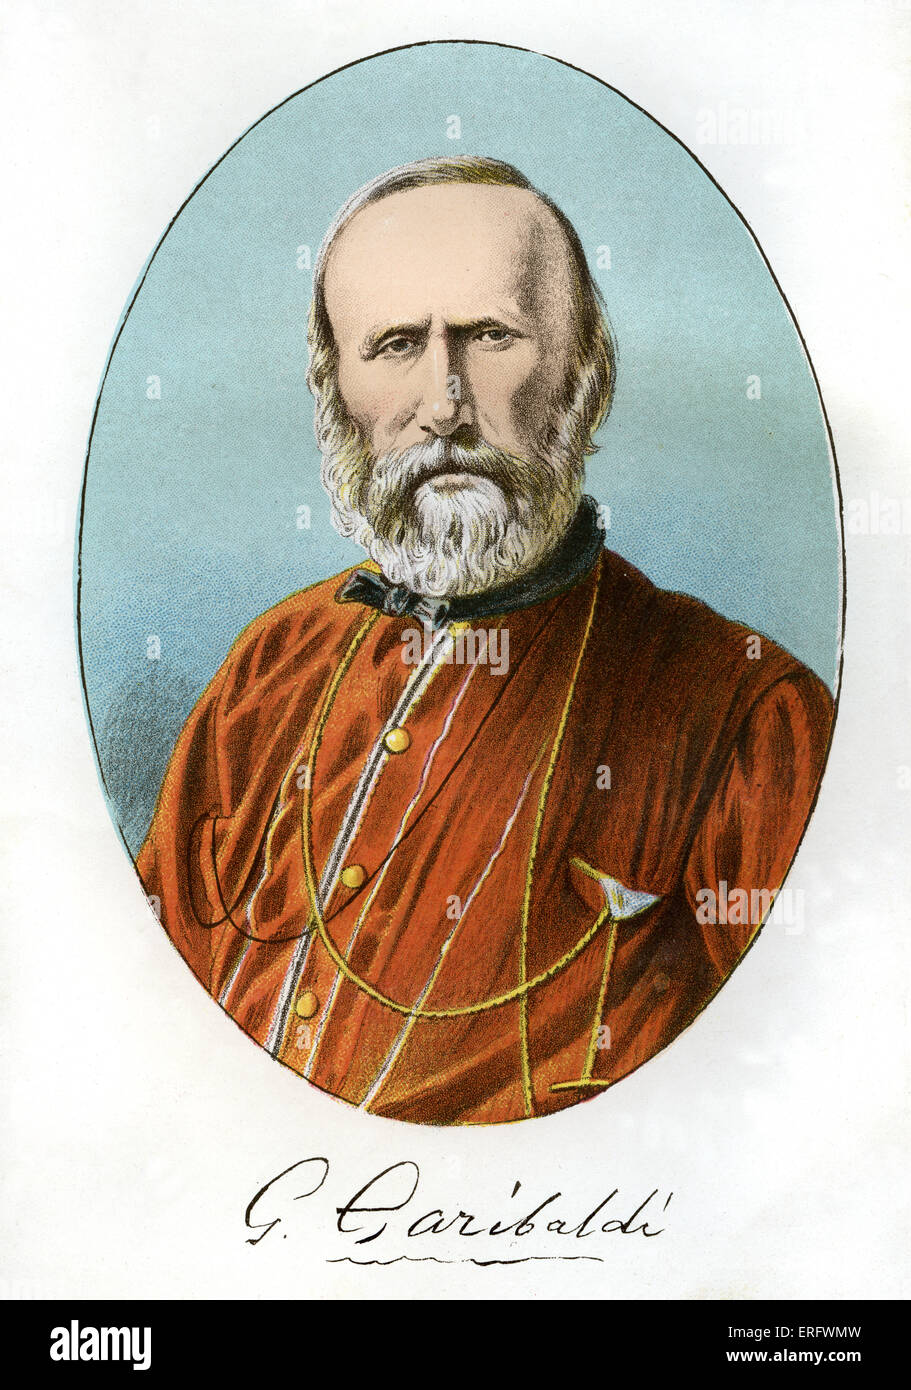 Guiseppe Garibaldi ritratto con firma. GG: 4 luglio 1807 - 2 giugno 1882 Foto Stock